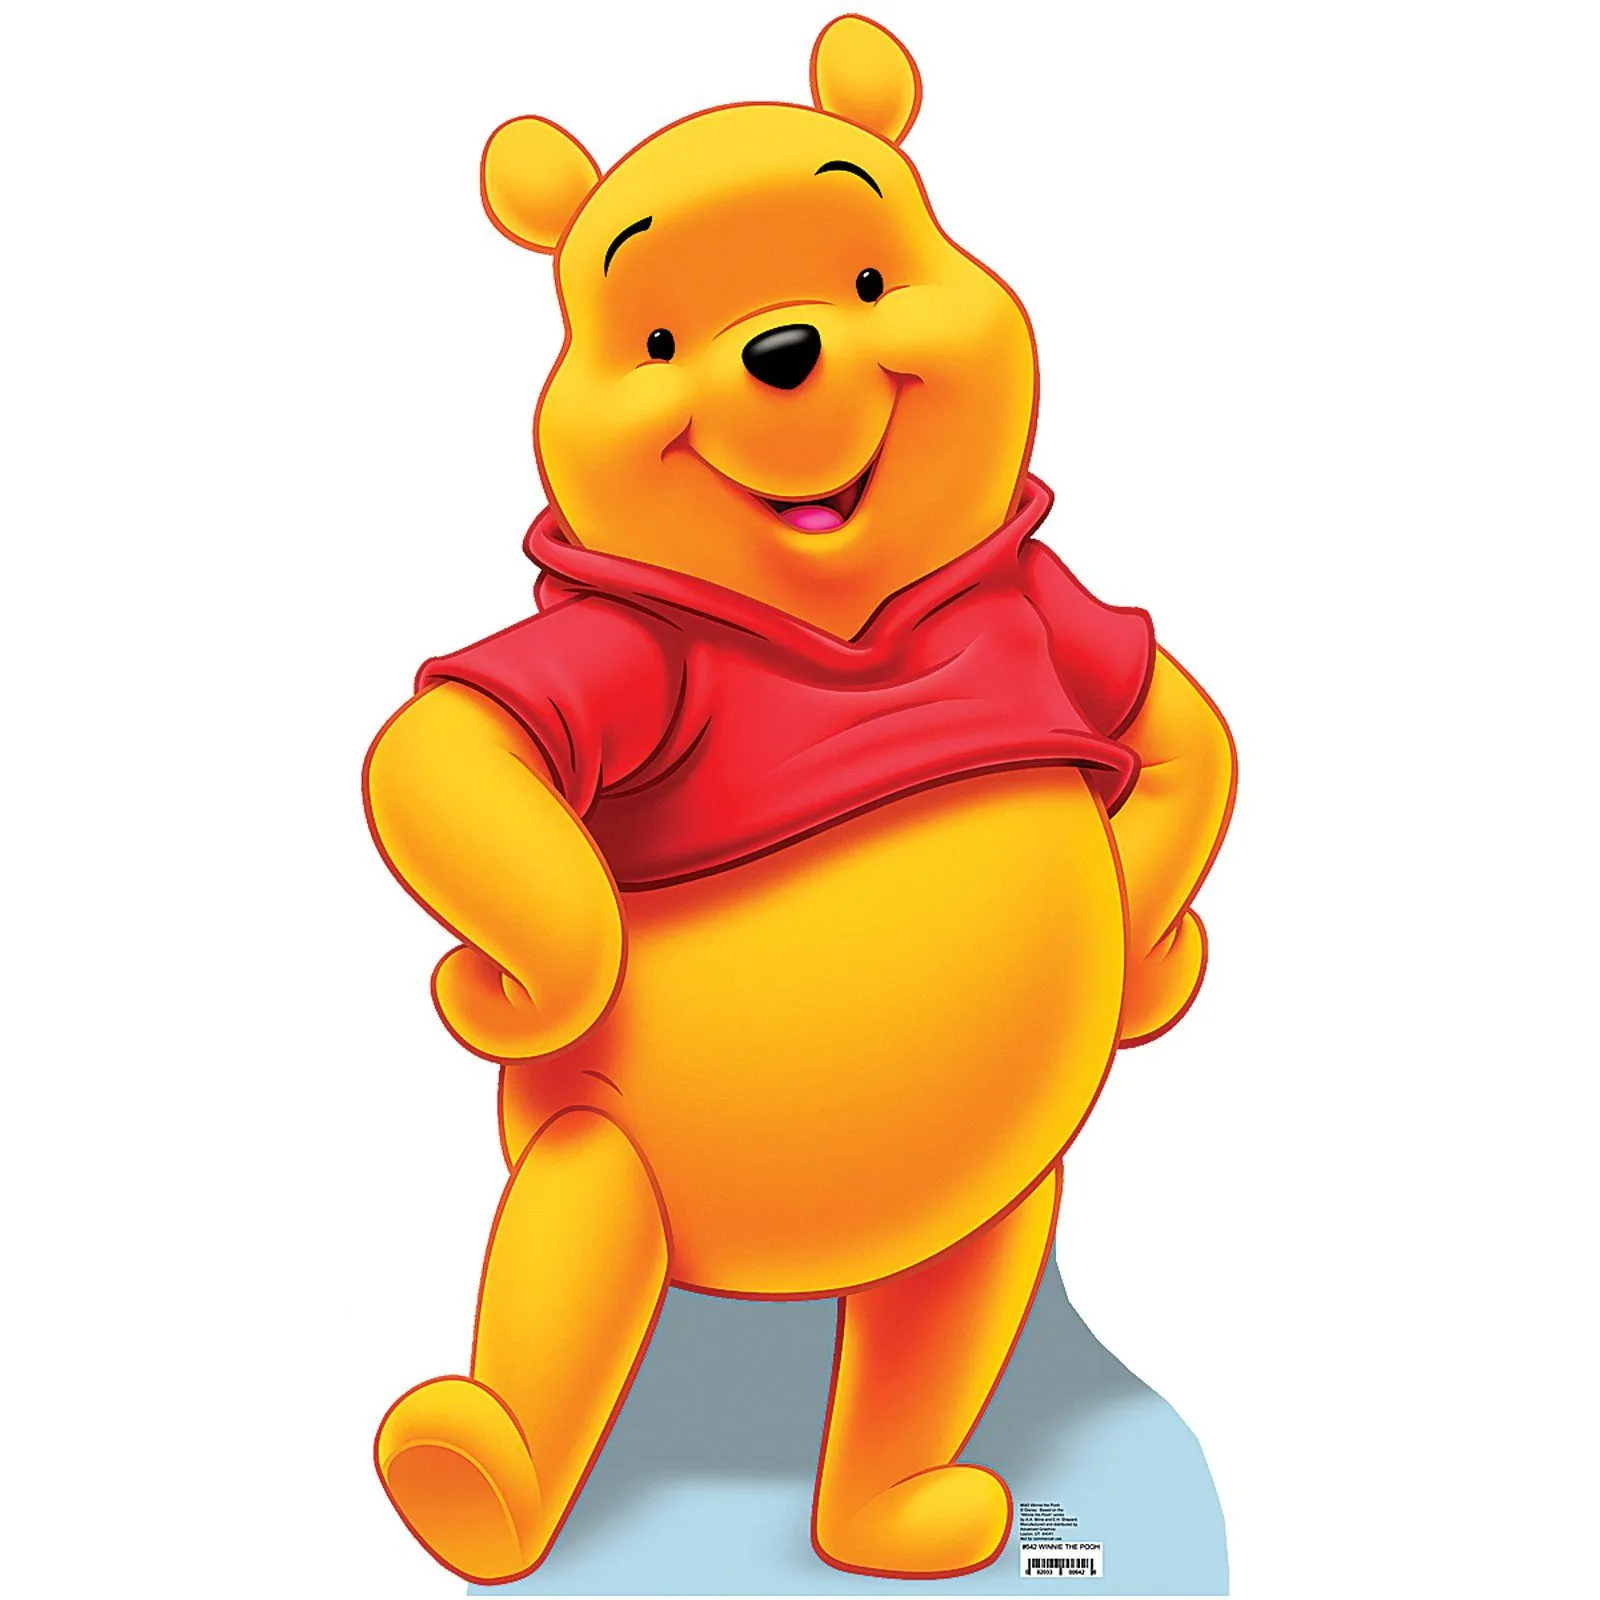 est100 一些攝影(some photos): Pooh Bear, Winnie the Pooh. 小熊維尼